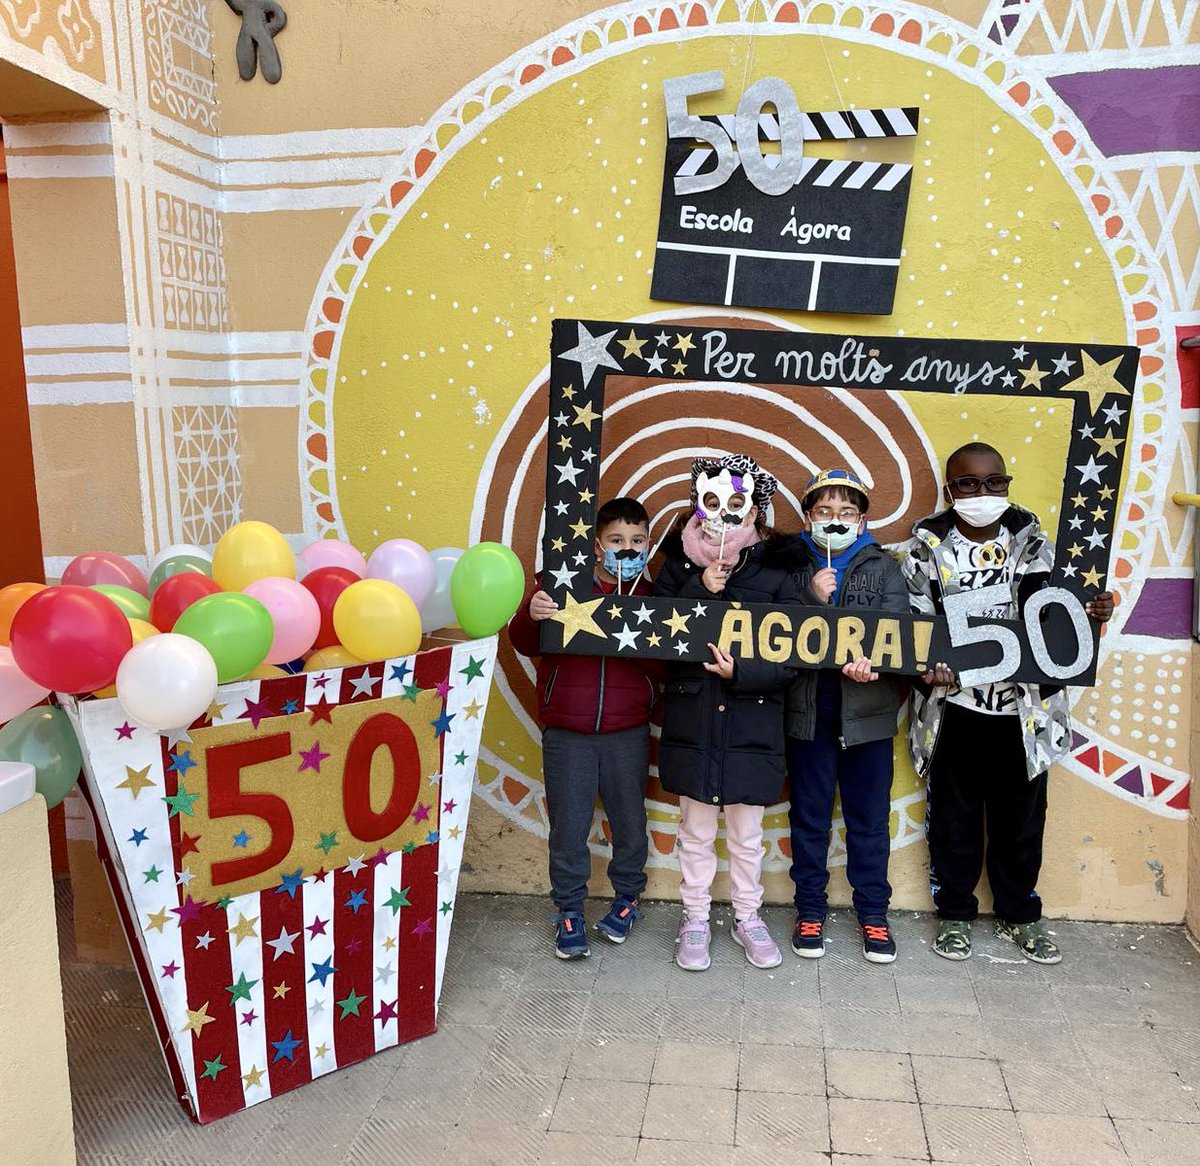 🎂 Avui fem 5️⃣0️⃣ anys 🎂

🥳 I ahir vam celebrar l’aniversari de l’Àgora amb molta emoció 🎊 amb:

🍫🥮 Una xocolatada amb coca
📝📦 Una càpsula del temps
🎶🎤 L’himne de l’escola
💃🏽🕺🏼Gresca i xerinola

#50anysfentescola #50èaniversari #aniversariÀgora